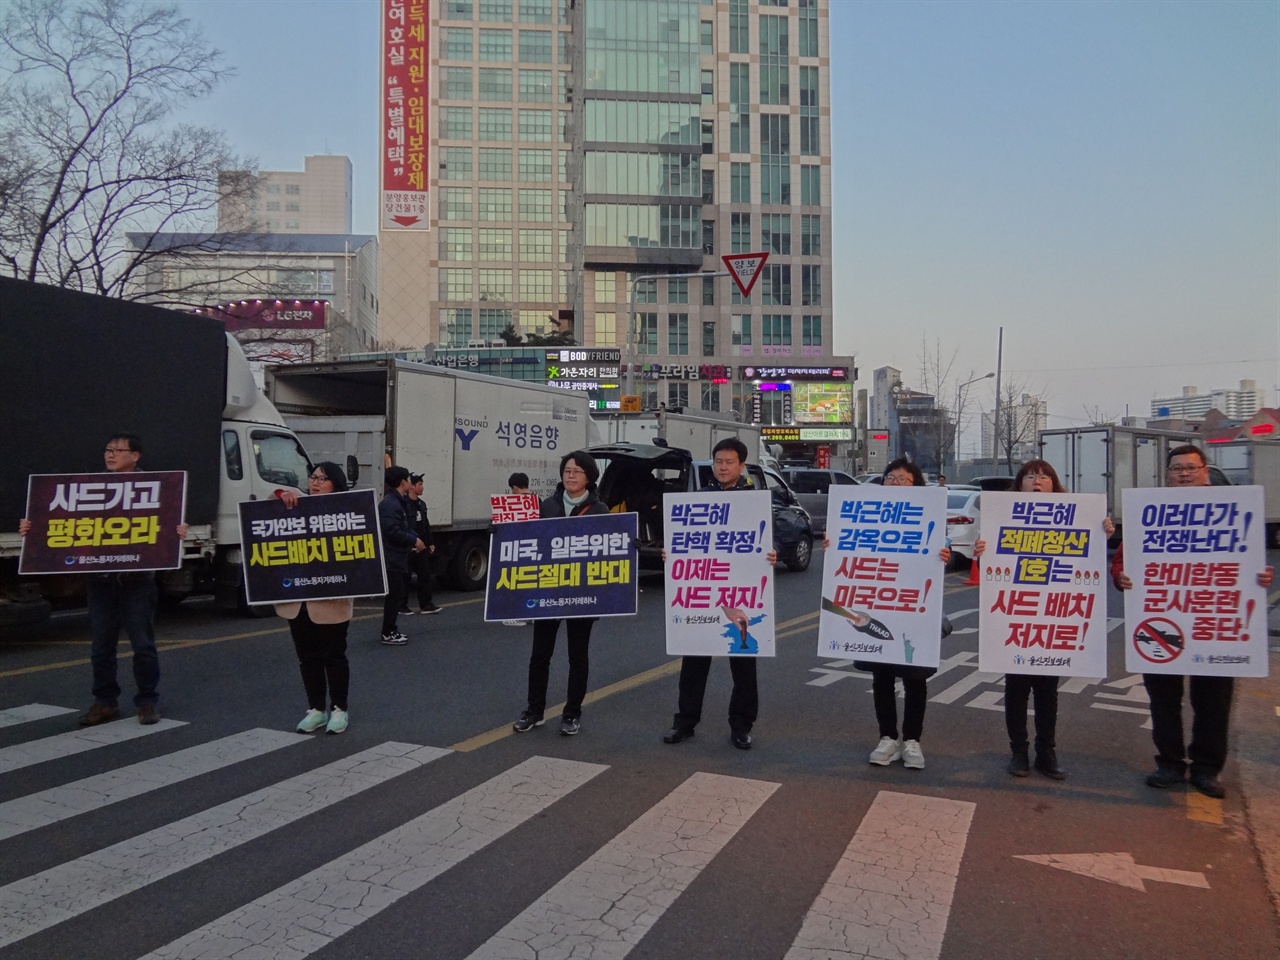 <울산노동자겨레하나>와 <울산진보연대>측에서 하는 사드배치 반대 피켓시위